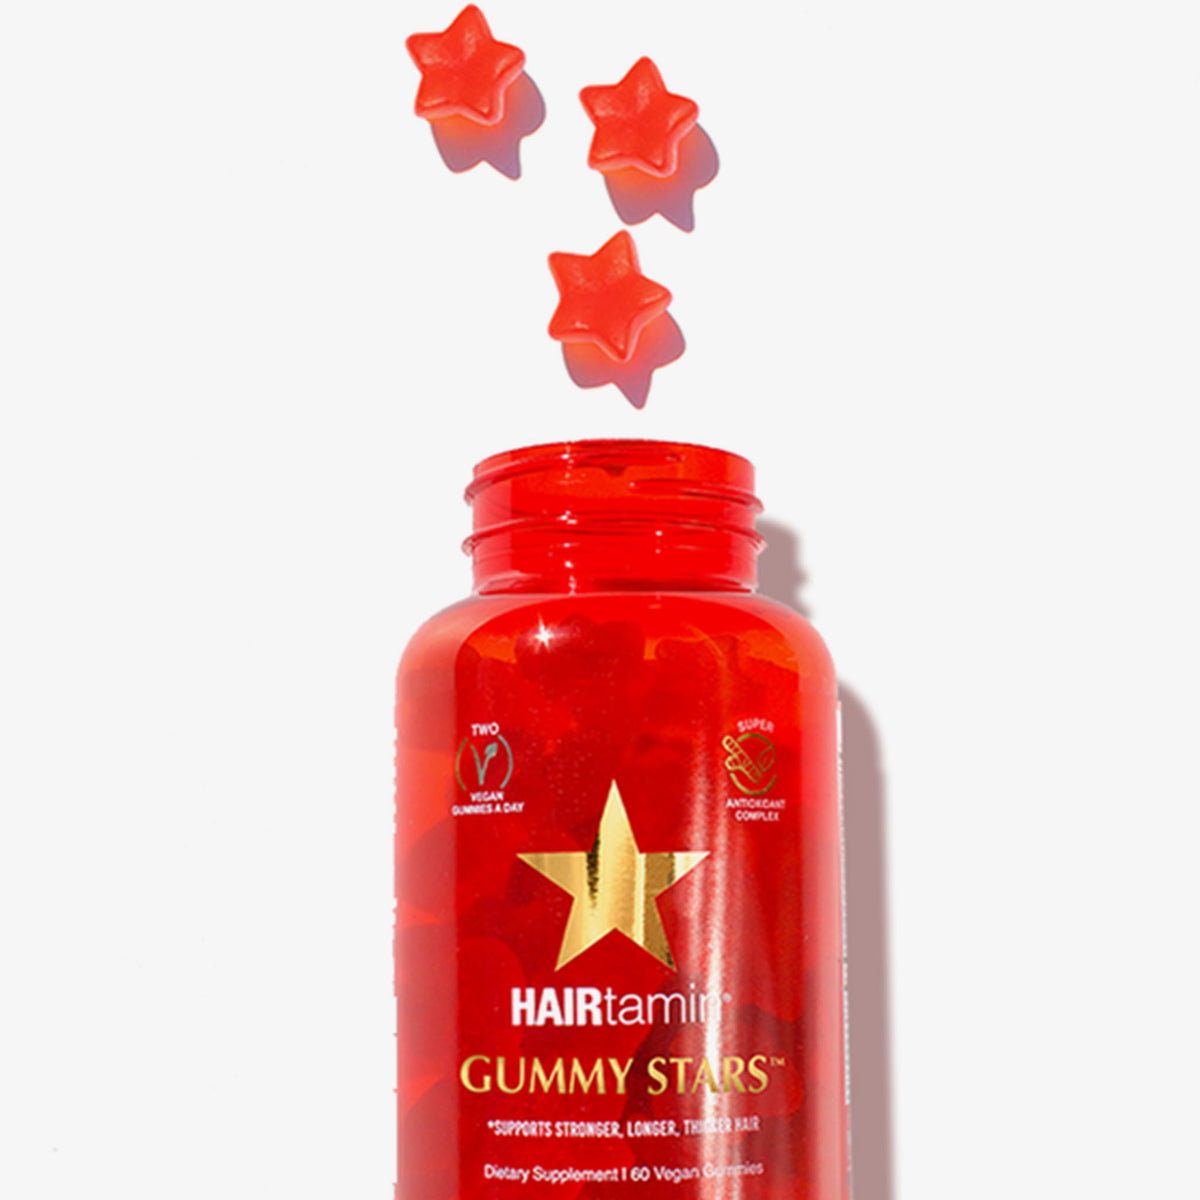 Offene Packung HAIRtamin Gummy Stars™ aus der 3 Stars herausgefallen sind. Weißer Grund.